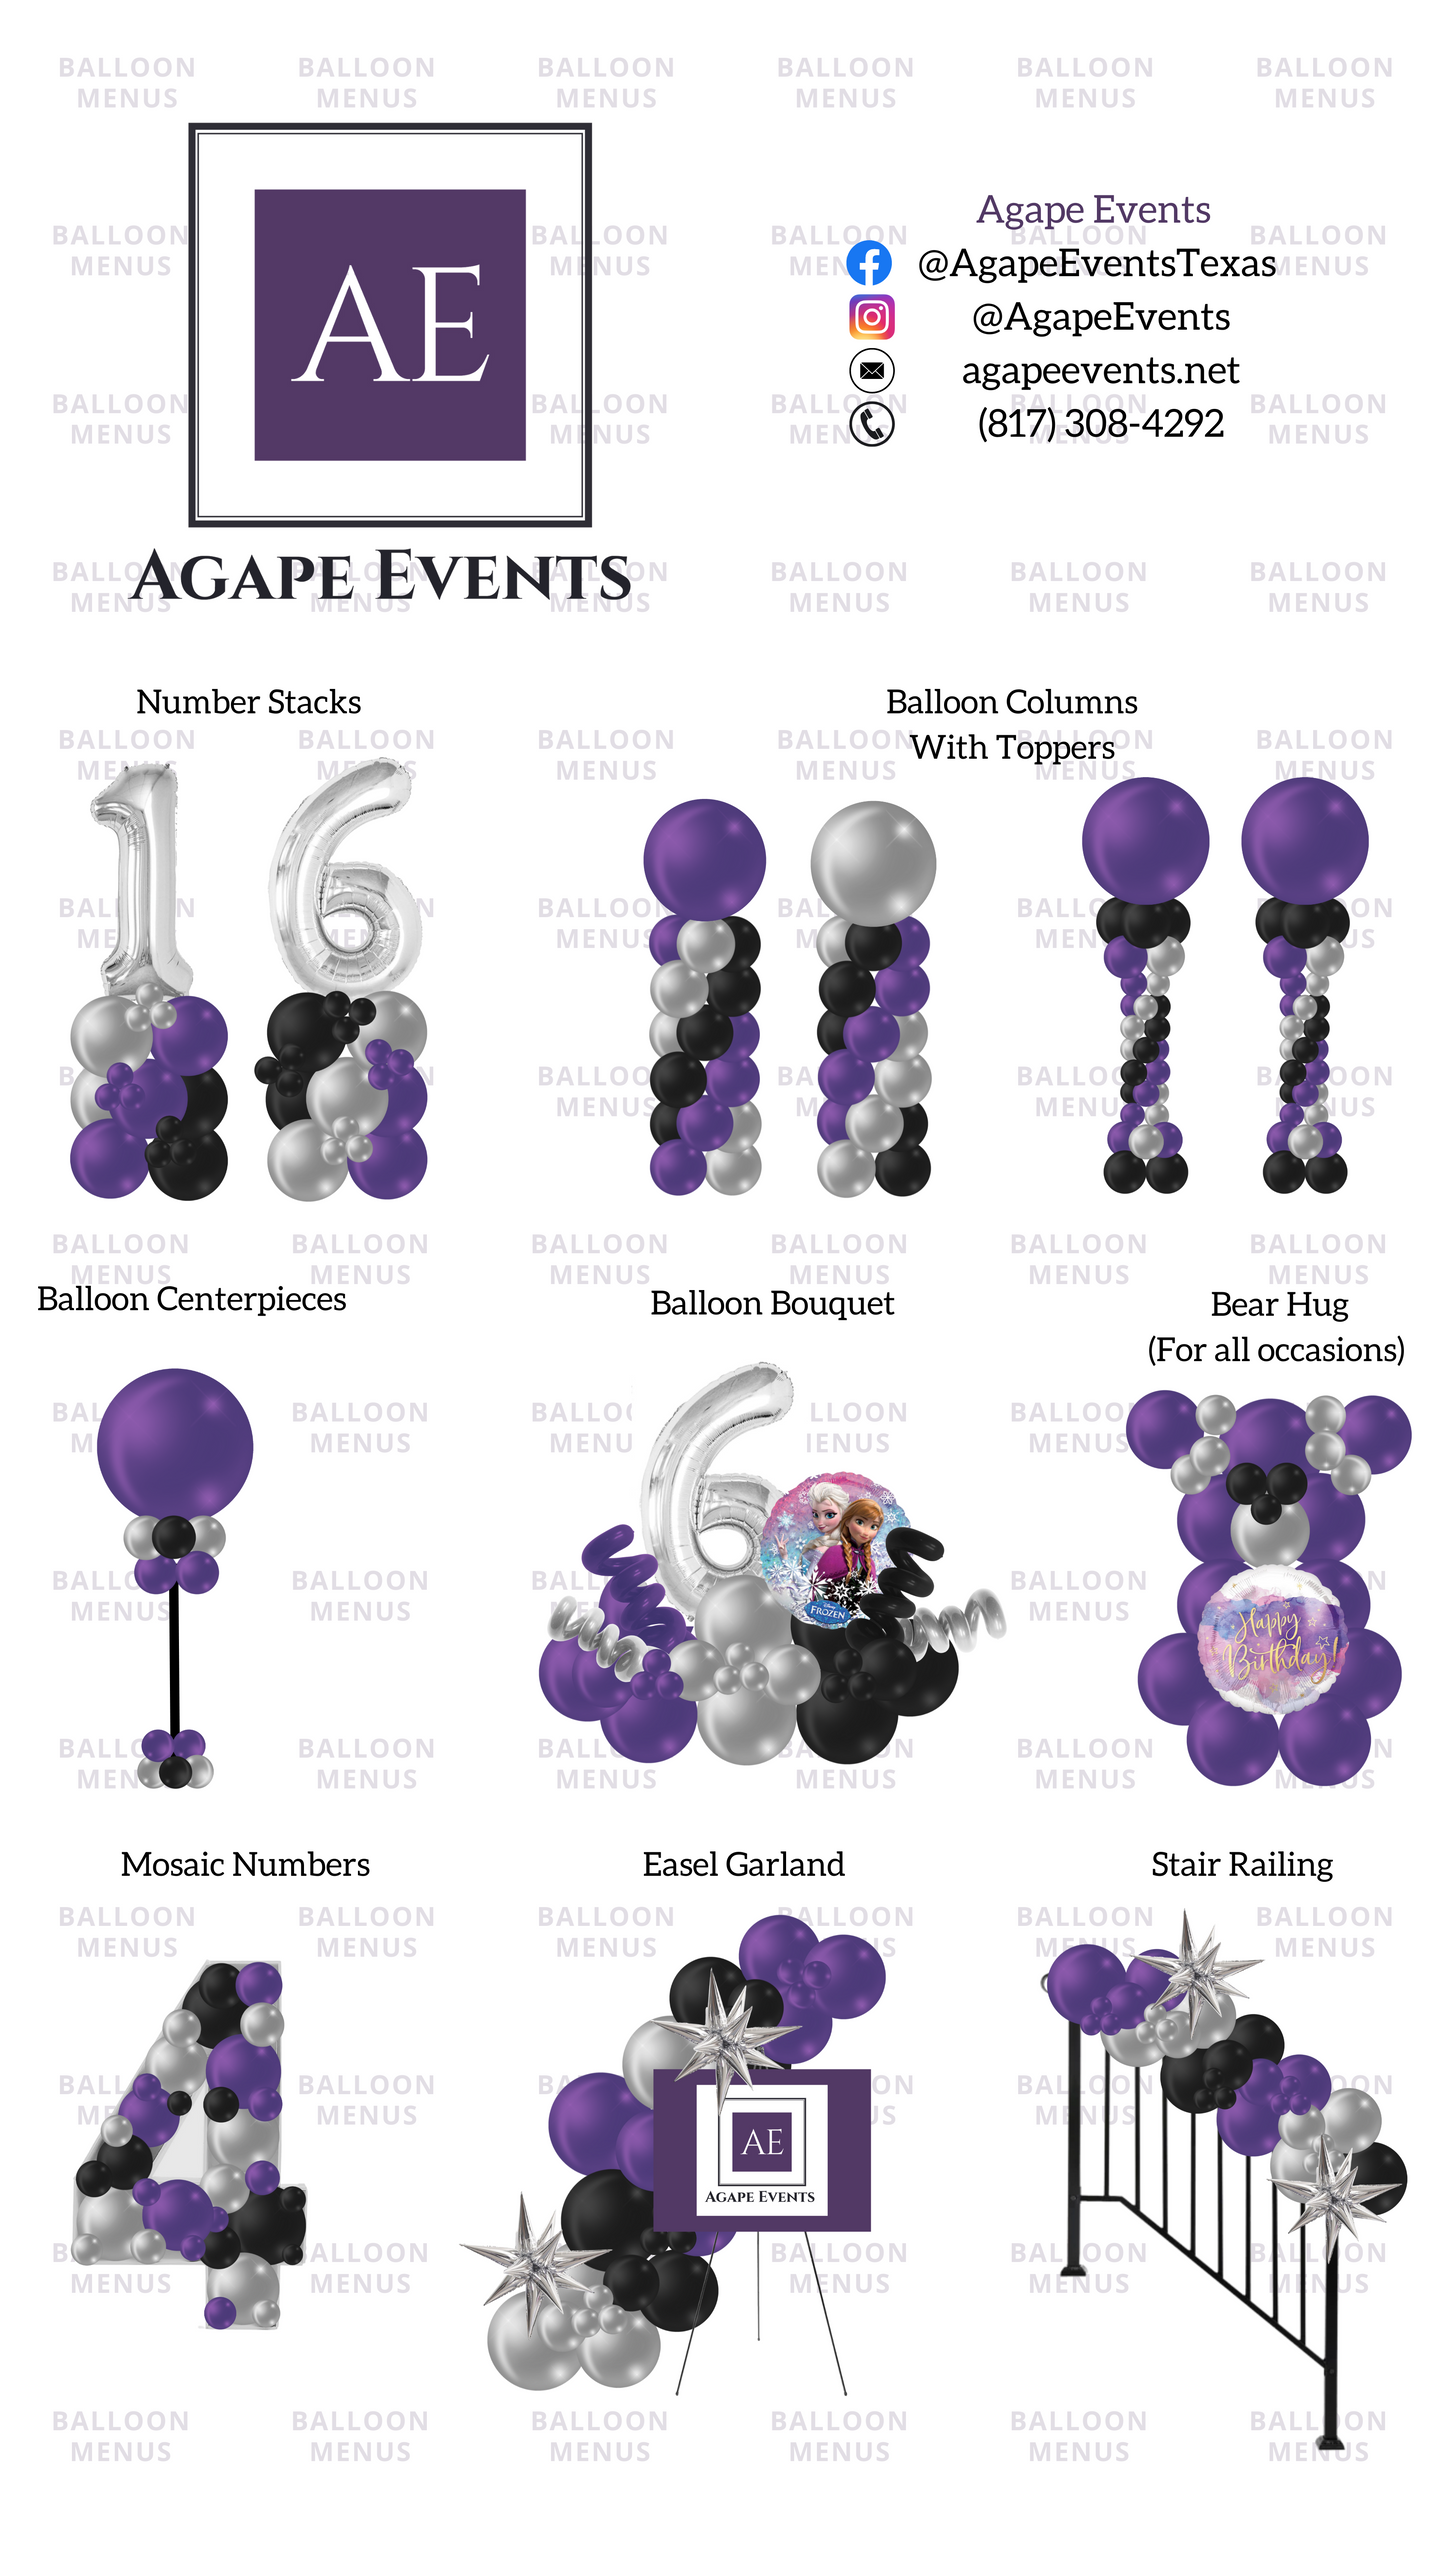 Agape Events- Client Balloon Menu